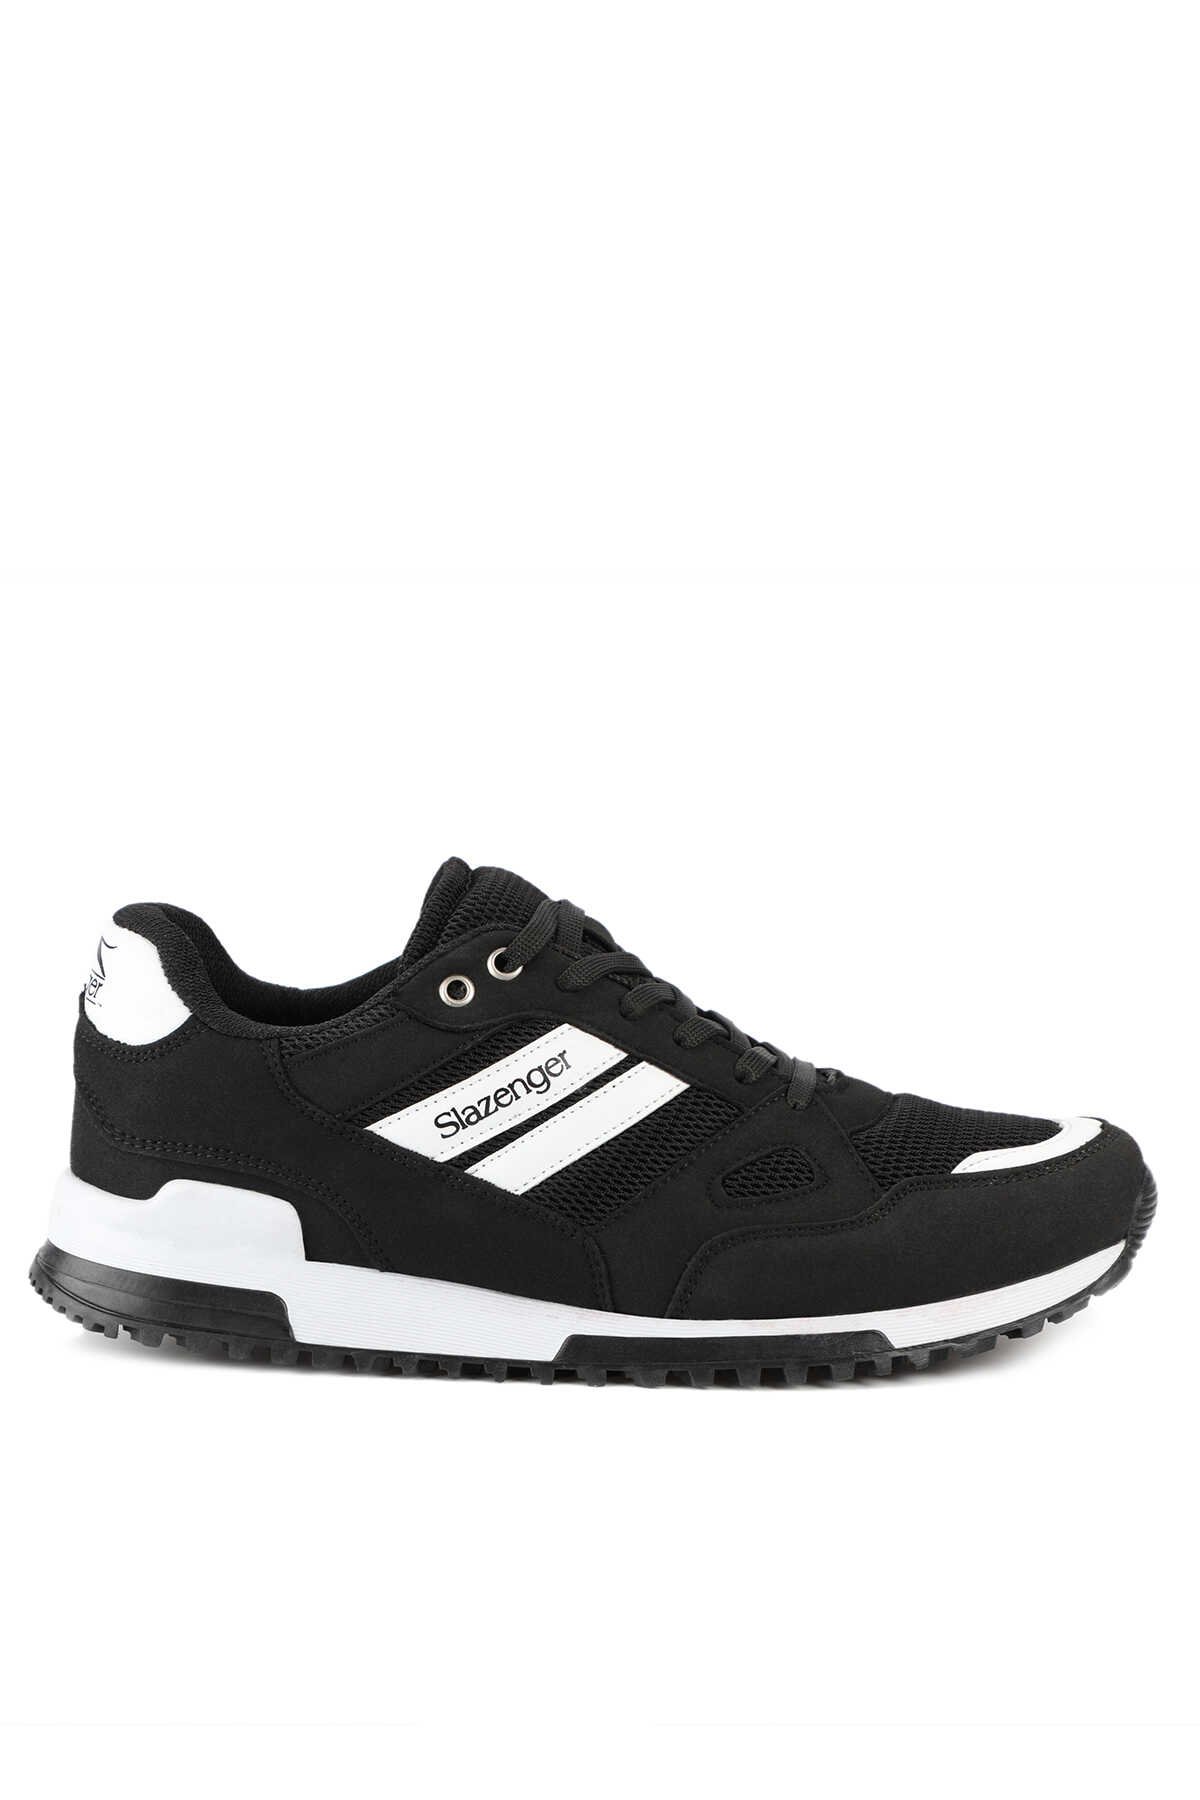 Slazenger - Slazenger MAROON I Sneaker Unisex Ayakkabı Siyah / Beyaz